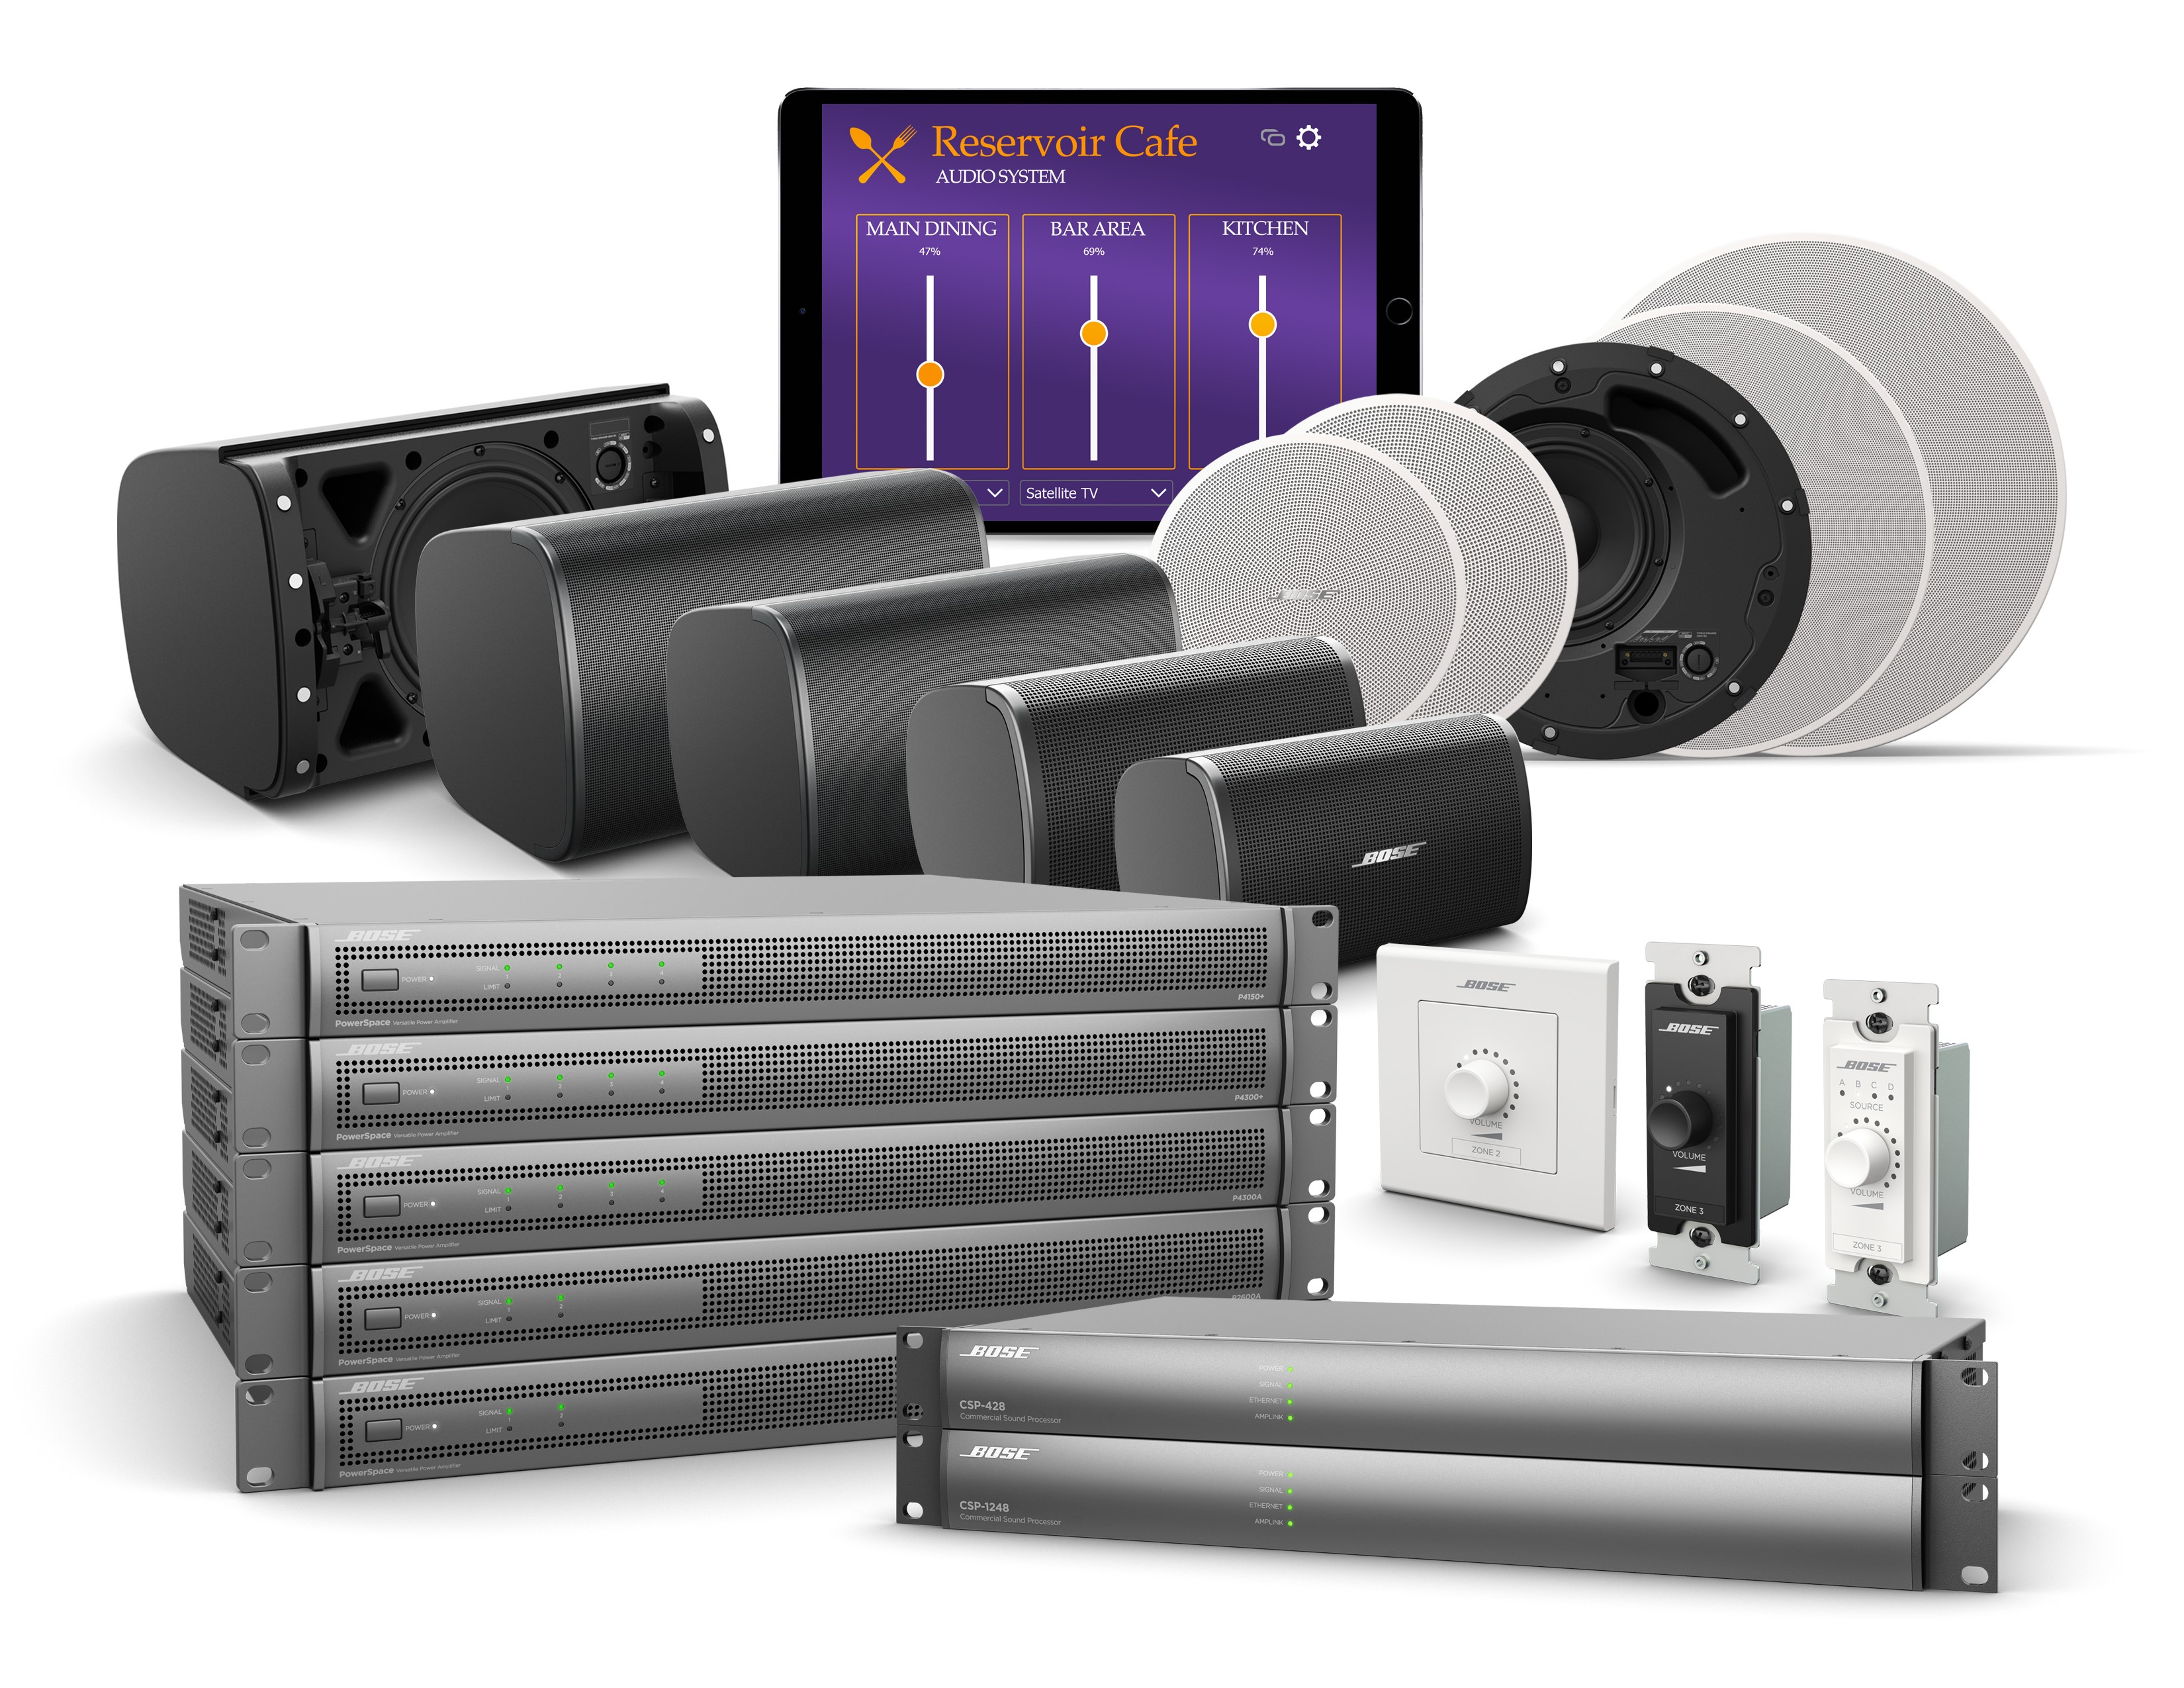 Bose Professional prezintă noile sisteme audio pentru domeniul business